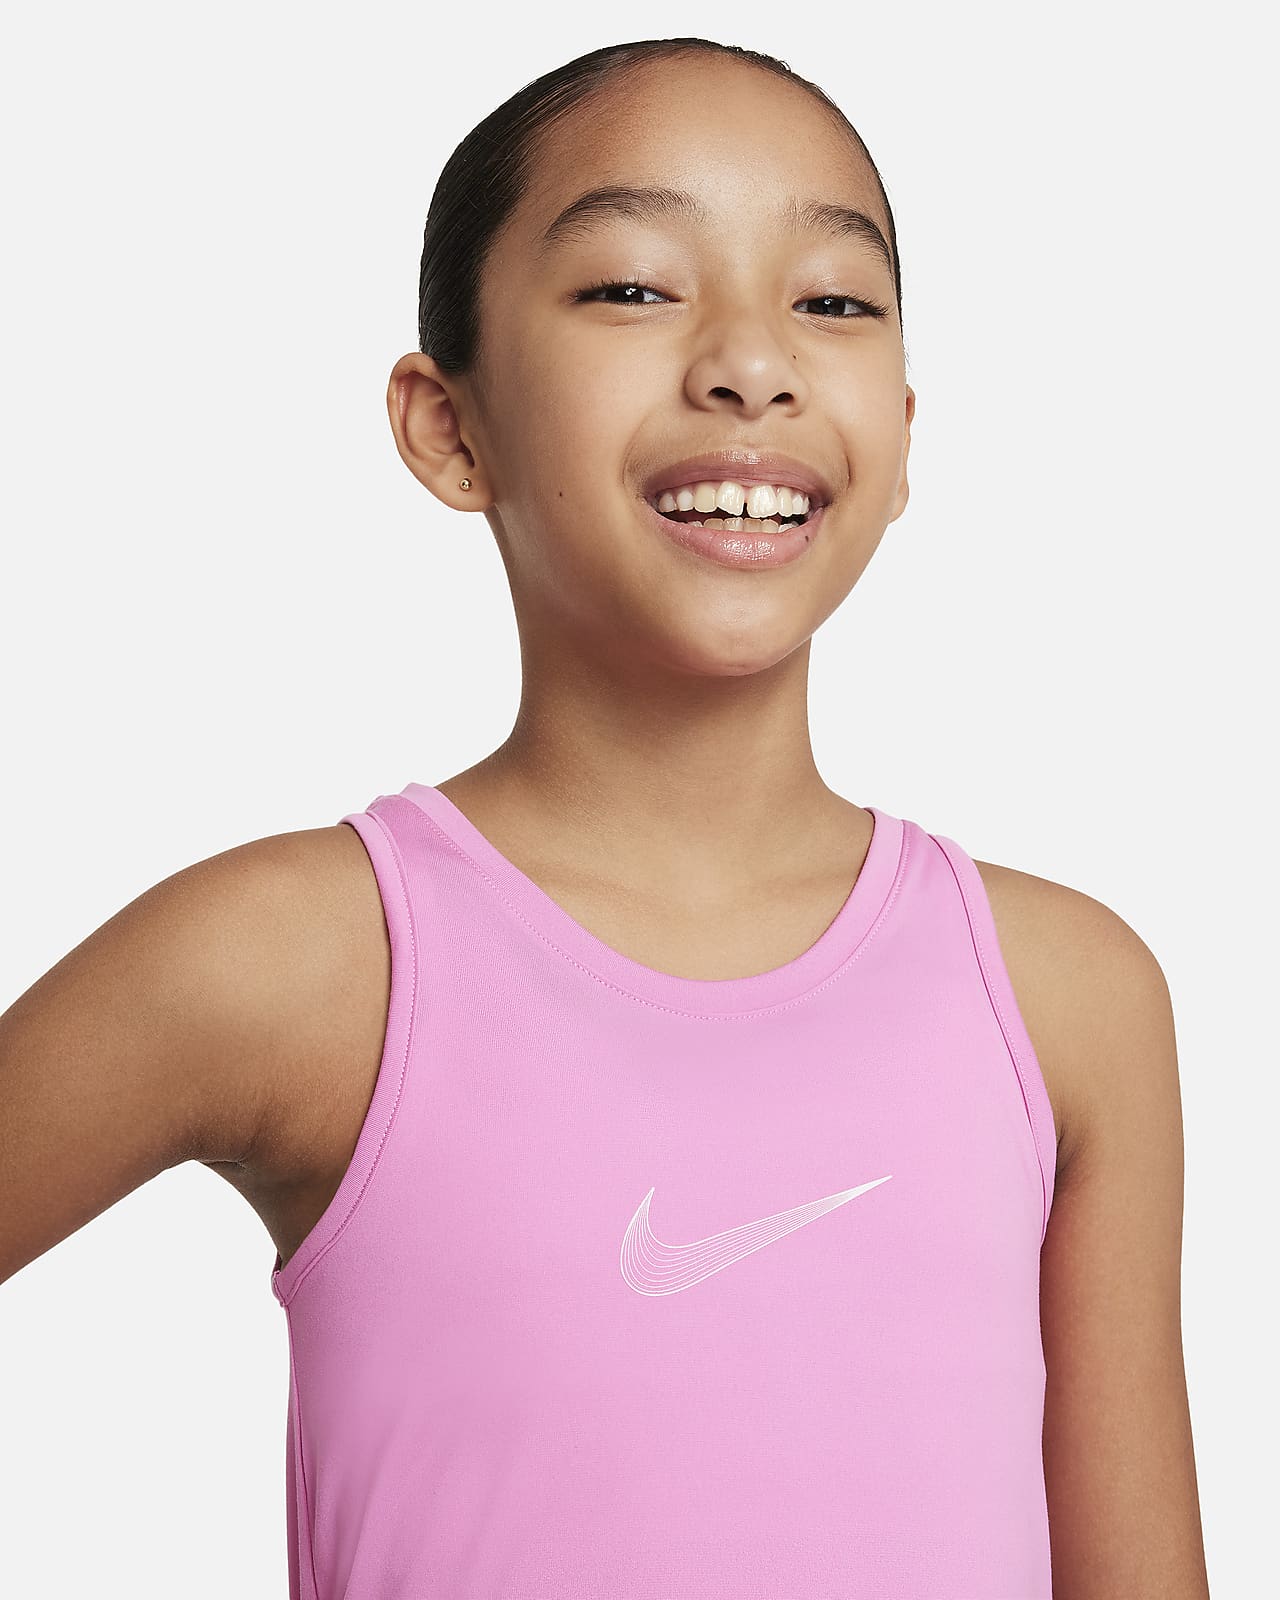 Nike Pro Big Kids' (Girls') Tank